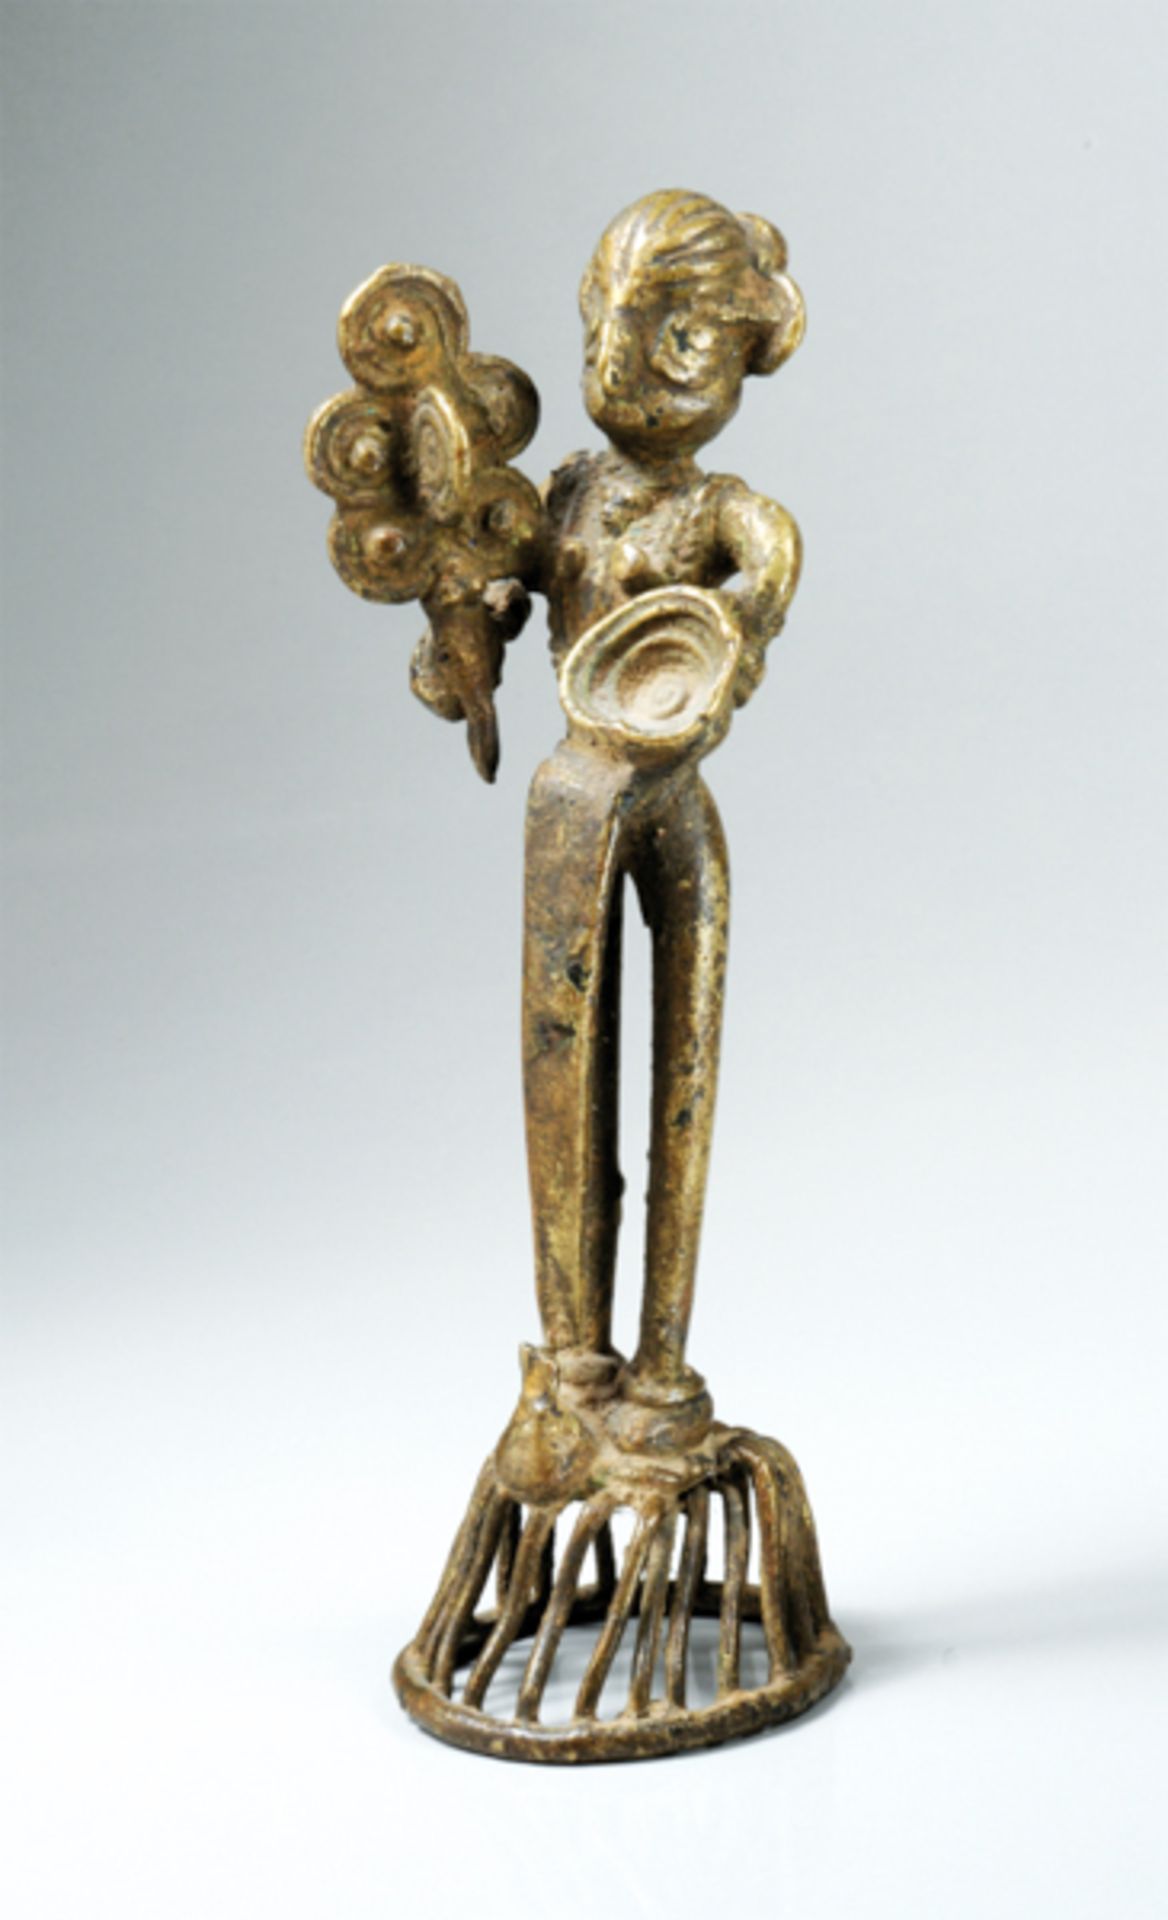 GÖTTIN MIT GROßEM FEDERNBUSCH
Gelbliche Bronze, Indien, Bastar, 19. Jh.Es ist auffällig, zu welch